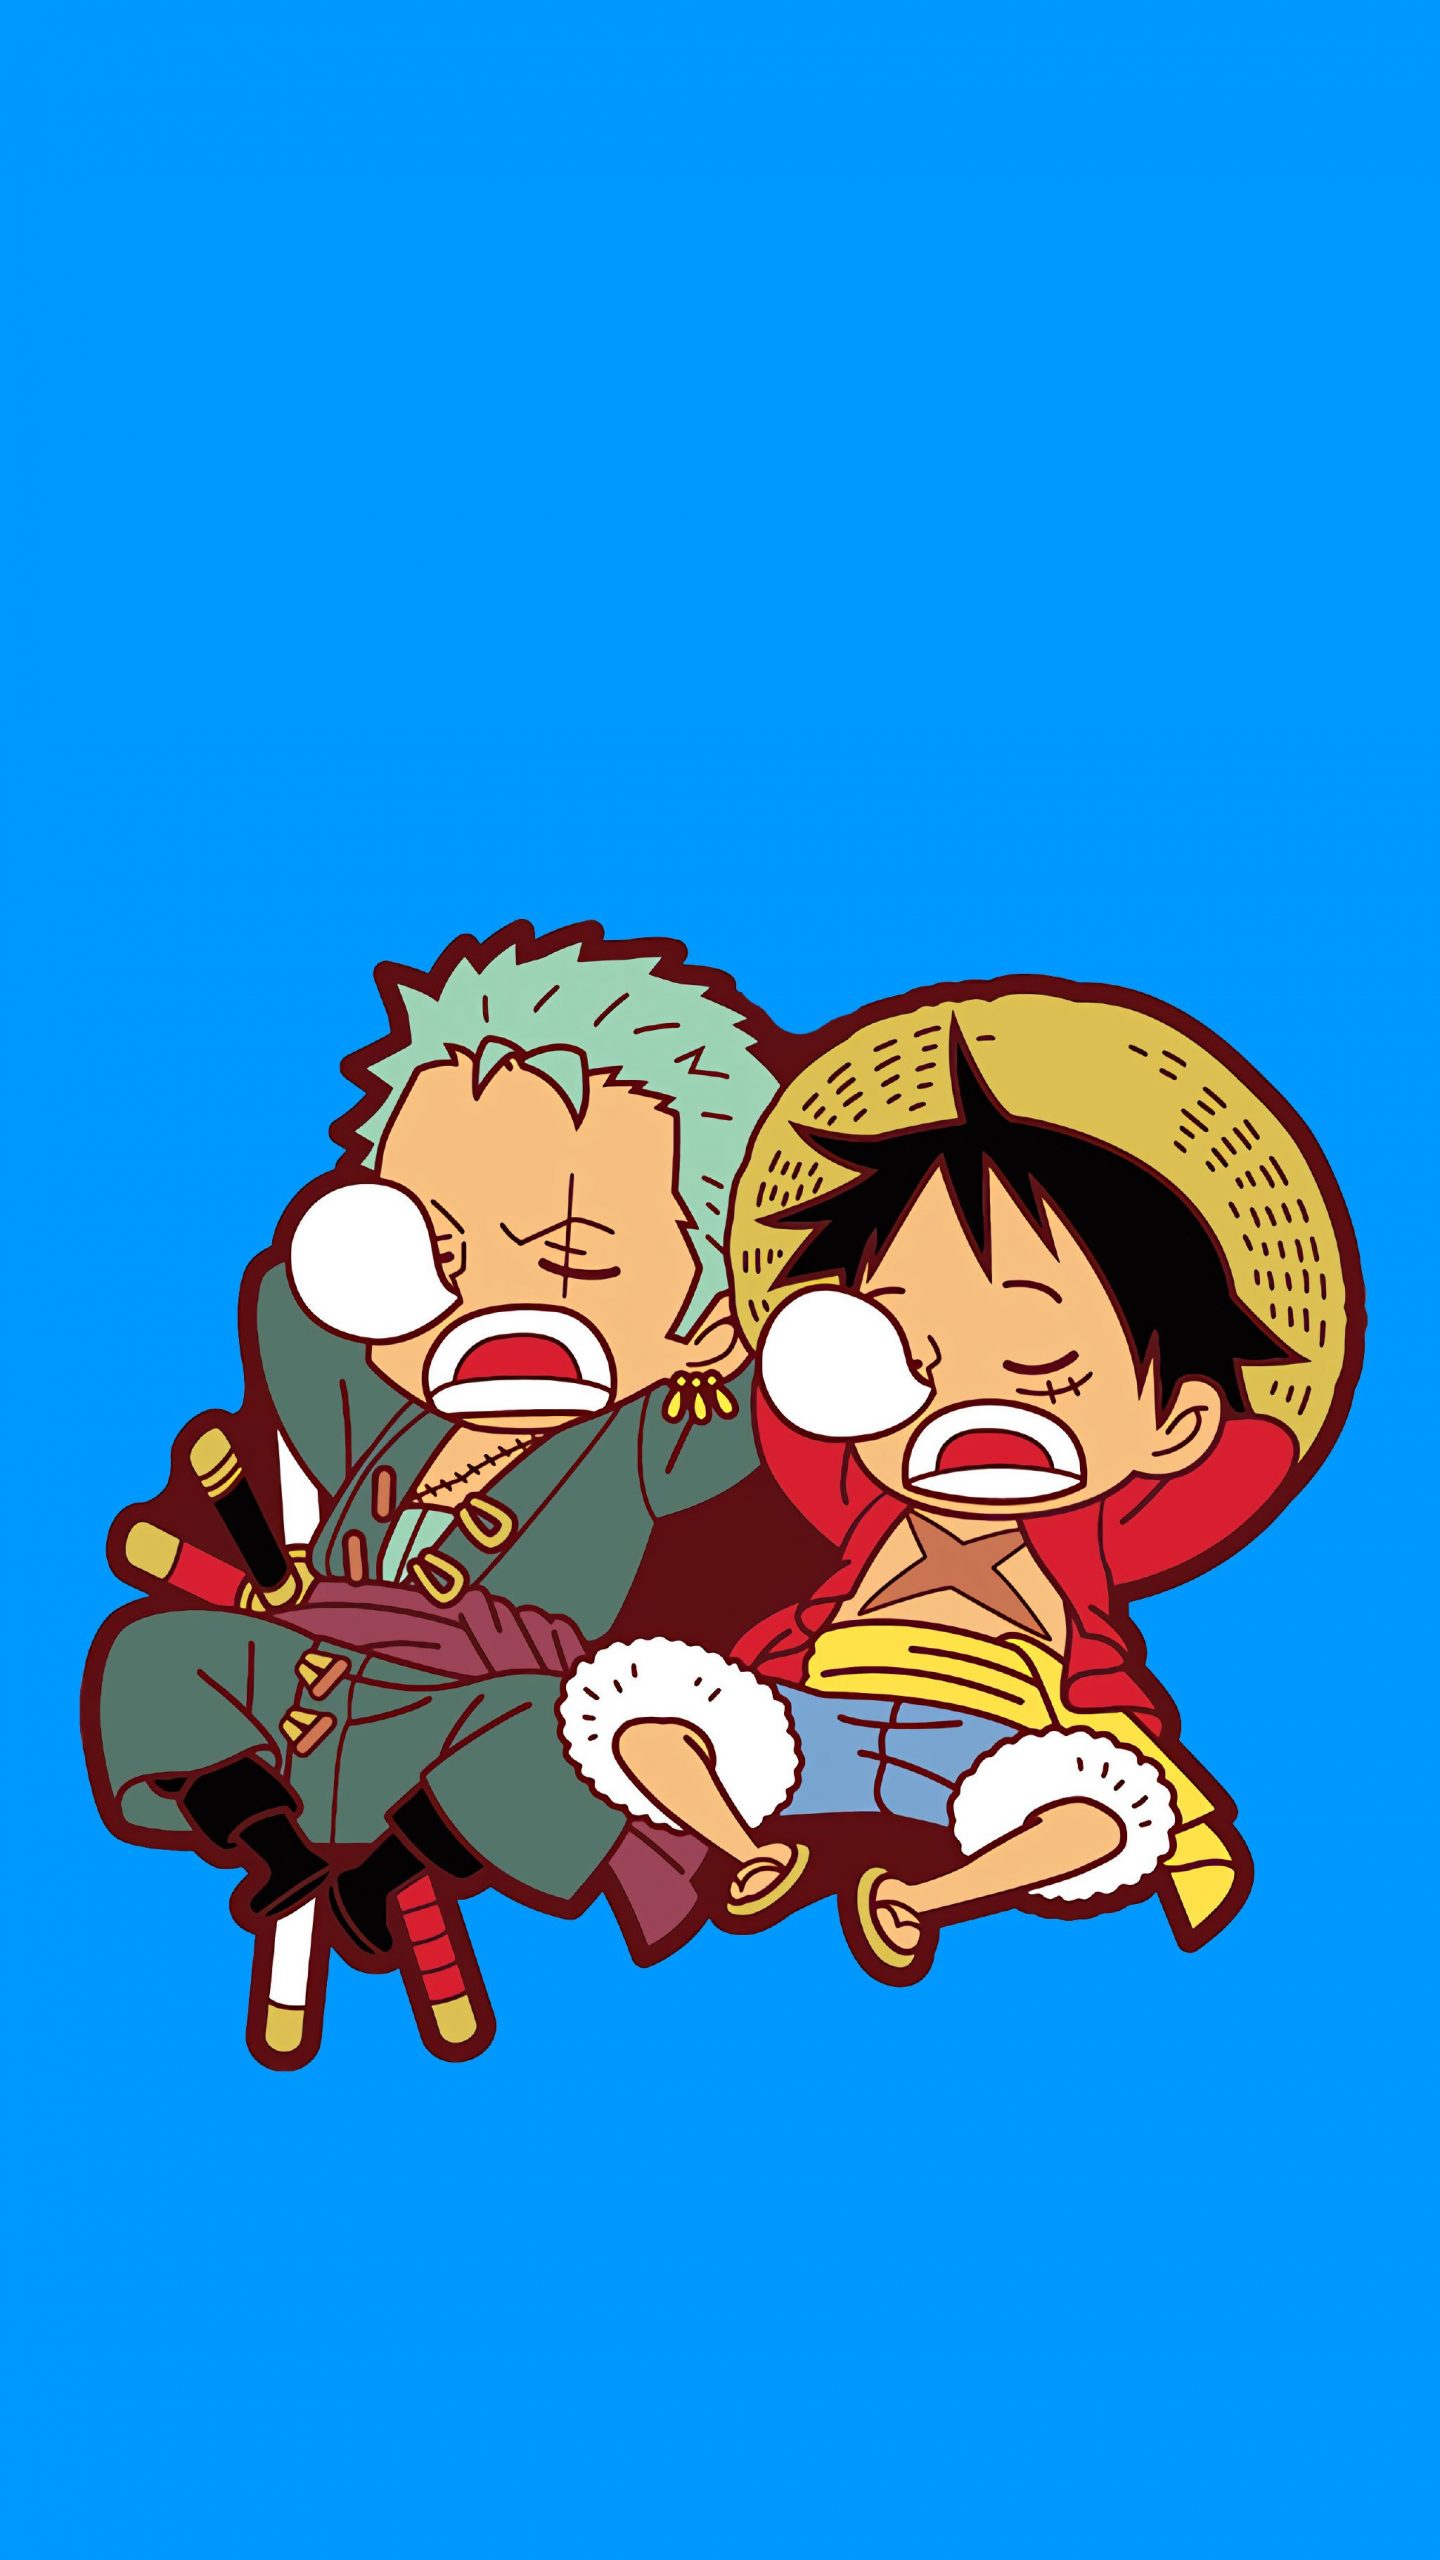 Bộ Hình Nền One Piece Cho Điện Thoại mang đến cho bạn không gian toàn bộ thế giới Hải Tặc trên màn hình điện thoại của bạn. Với vô vàn hình ảnh về Luffy, Zoro, Sanji và các nhân vật phụ, bộ sưu tập này sẽ mang đến sự thỏa mãn để bạn hiện thực hóa tình yêu của mình đối với One Piece.